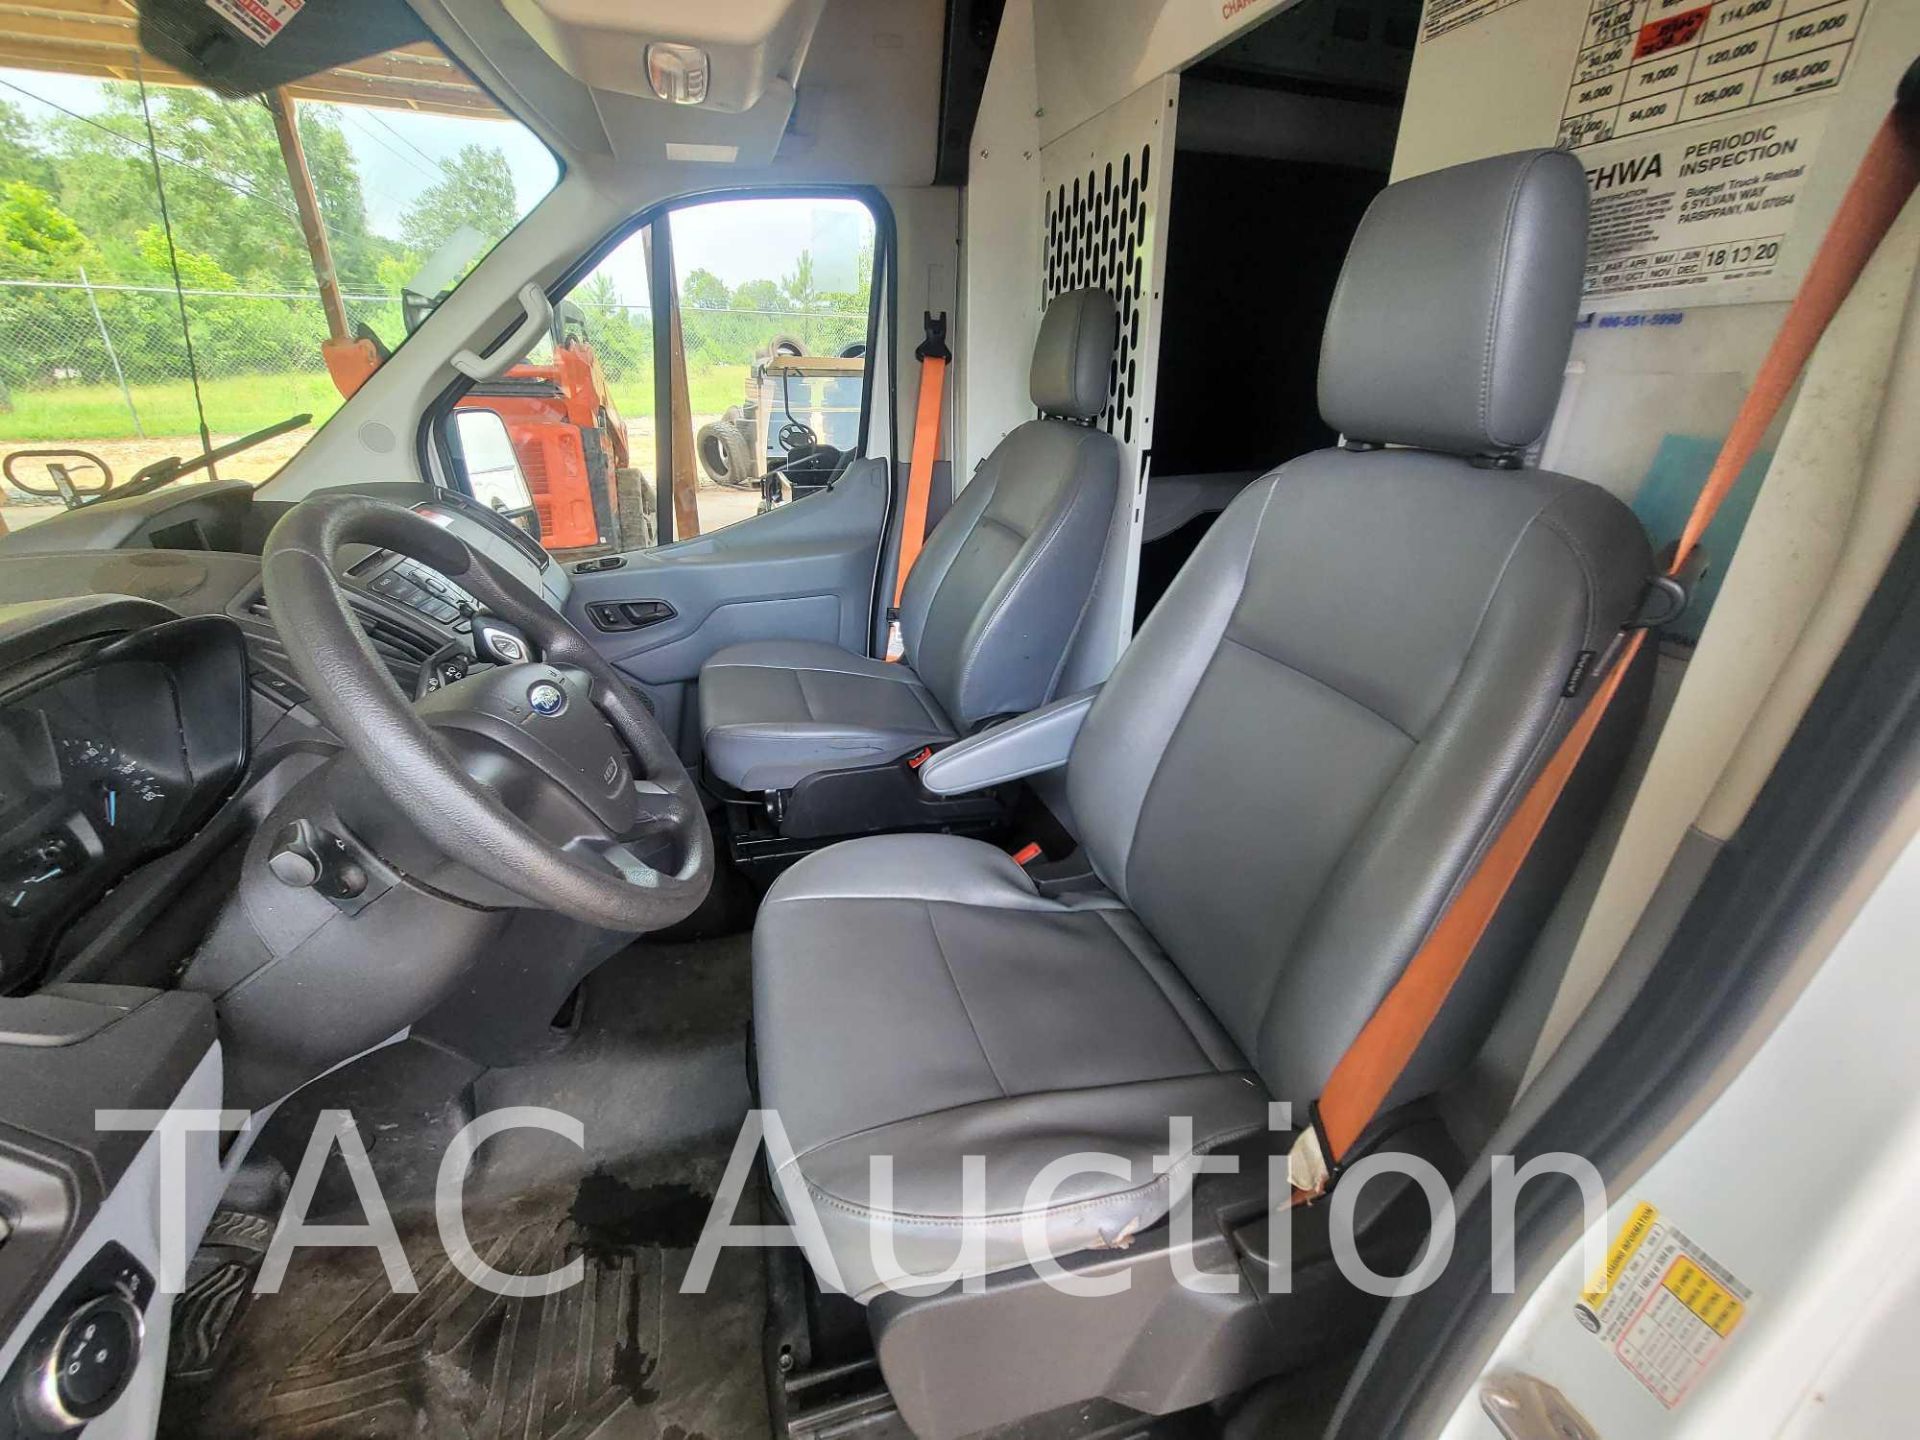 2019 Ford Transit 150 Cargo Van - Image 27 of 46